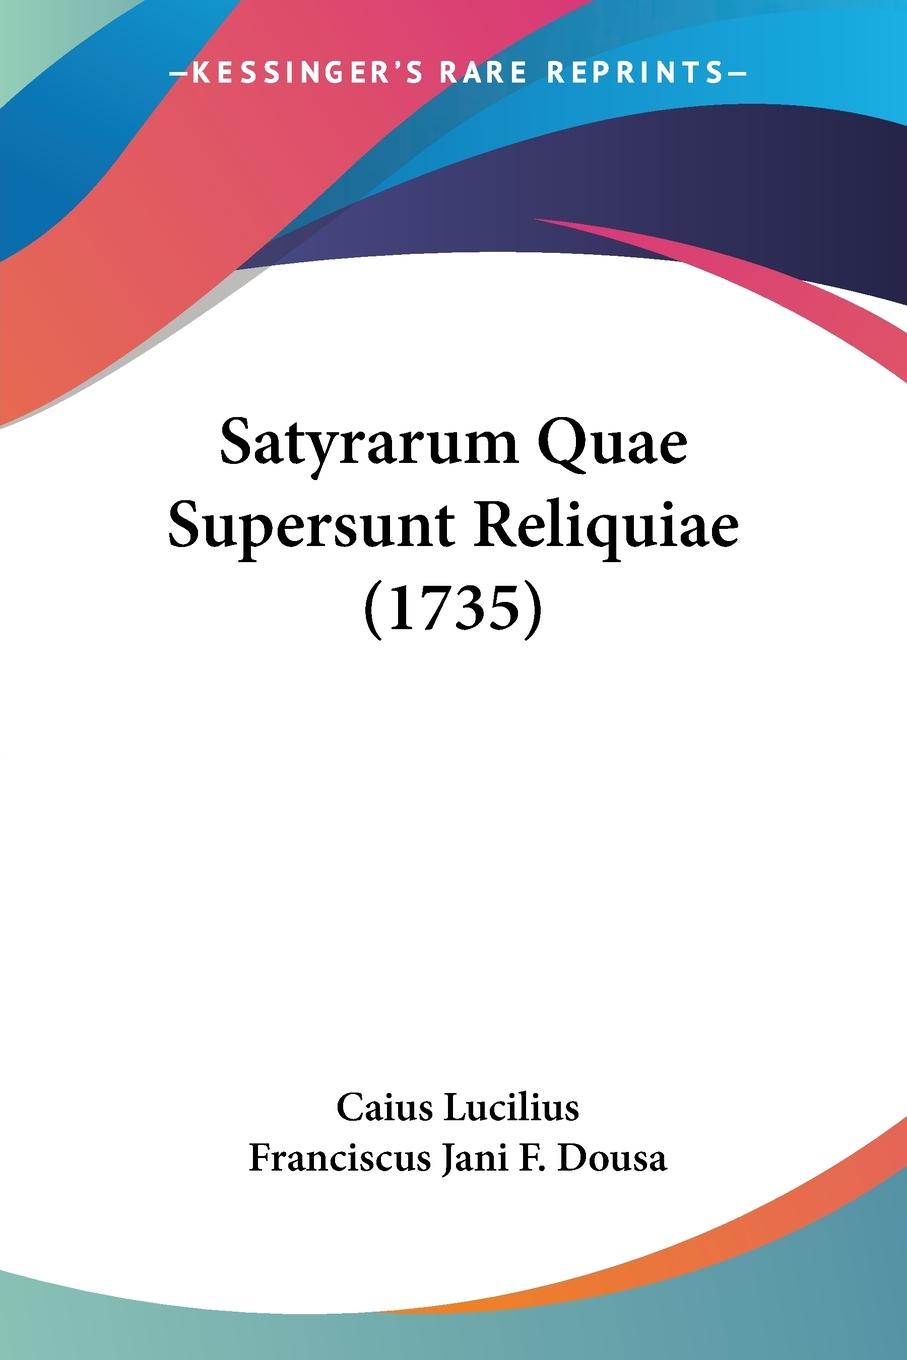 Satyrarum Quae Supersunt Reliquiae (1735) - Lucilius, Caius Dousa, Franciscus Jani F.